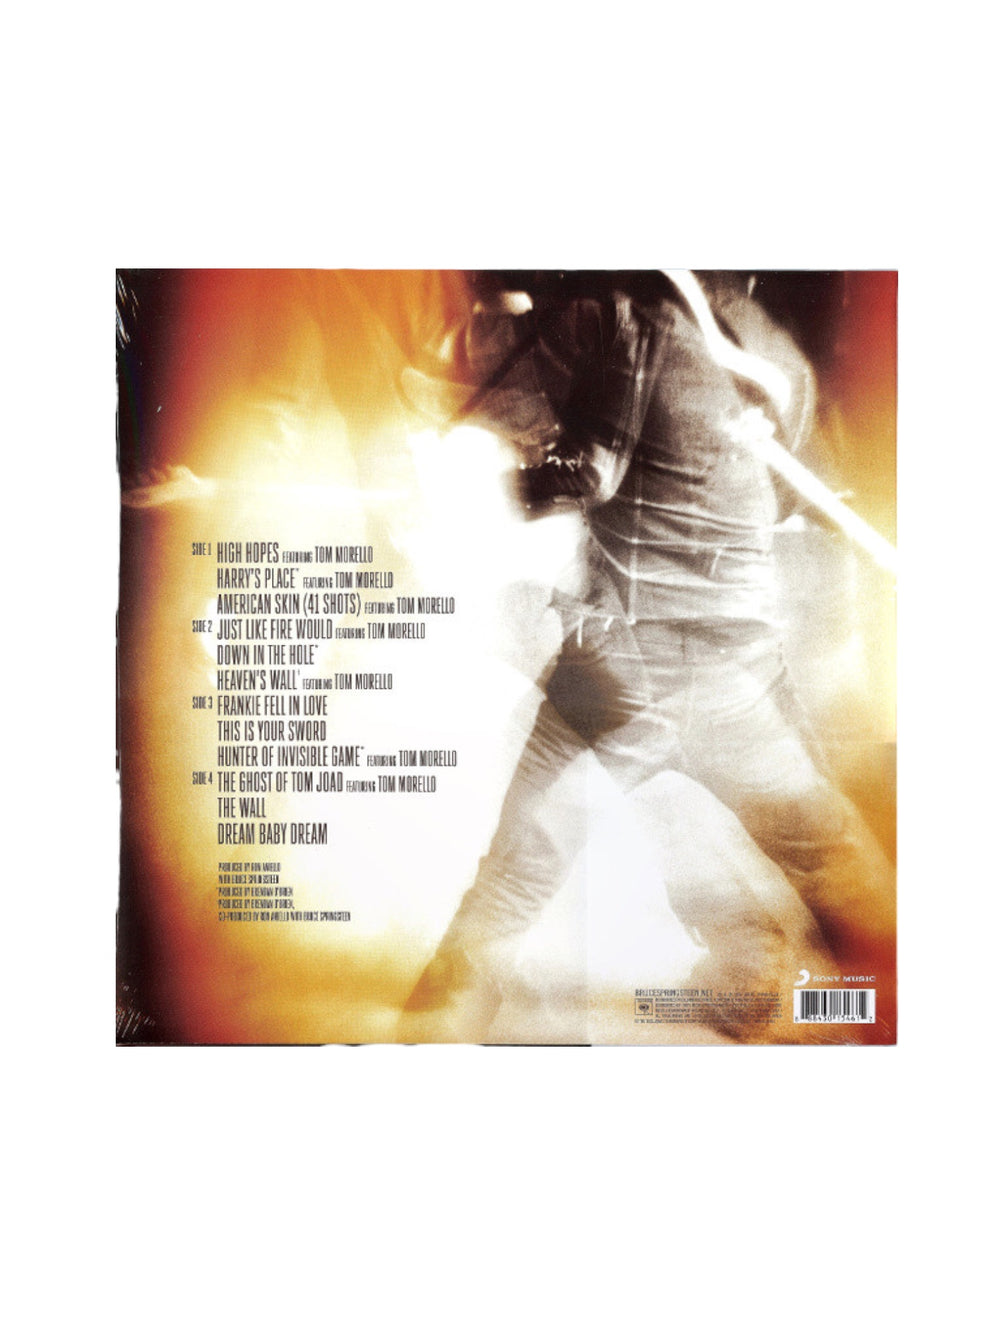 Bruce Springsteen High Hopes Double 180 Gram Vinyl & CD Set Shrink Wrap 2014